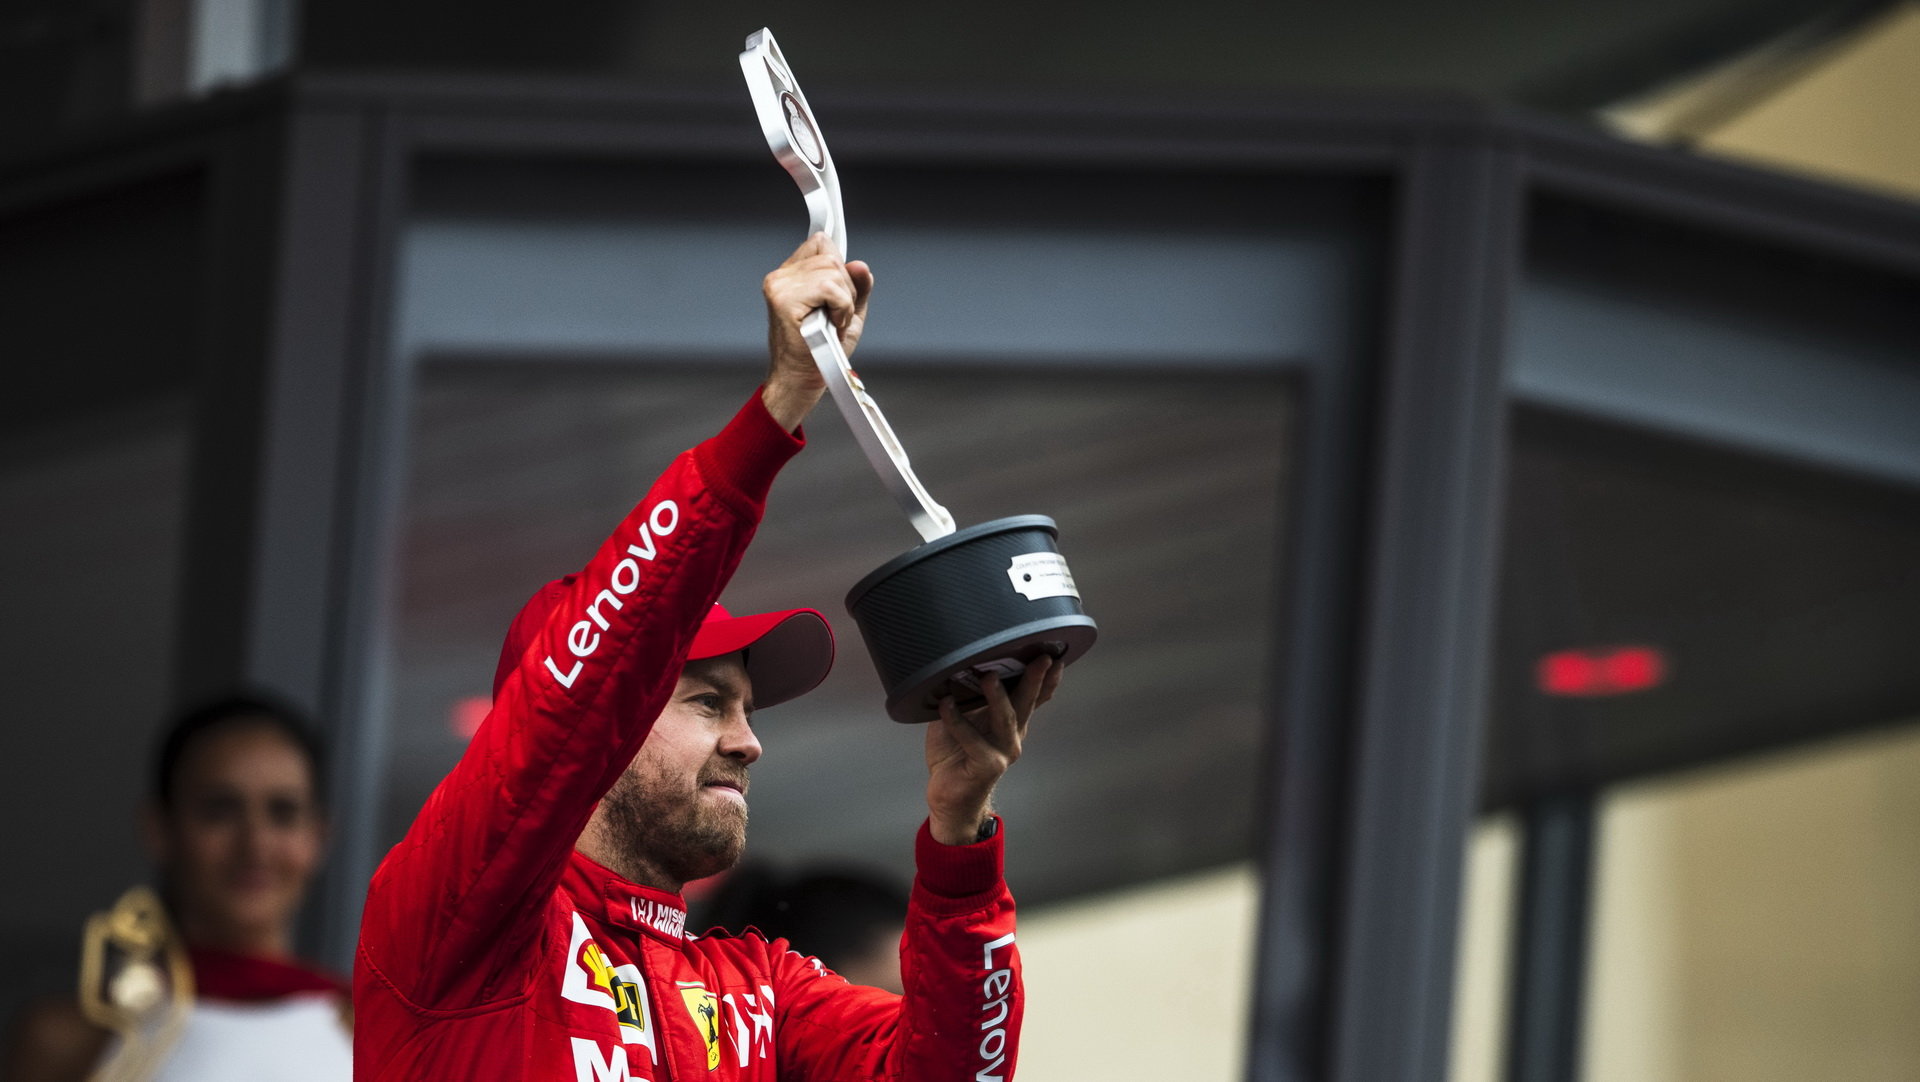 Sebastian Vettel se svou trofejí po závodě v Monaku